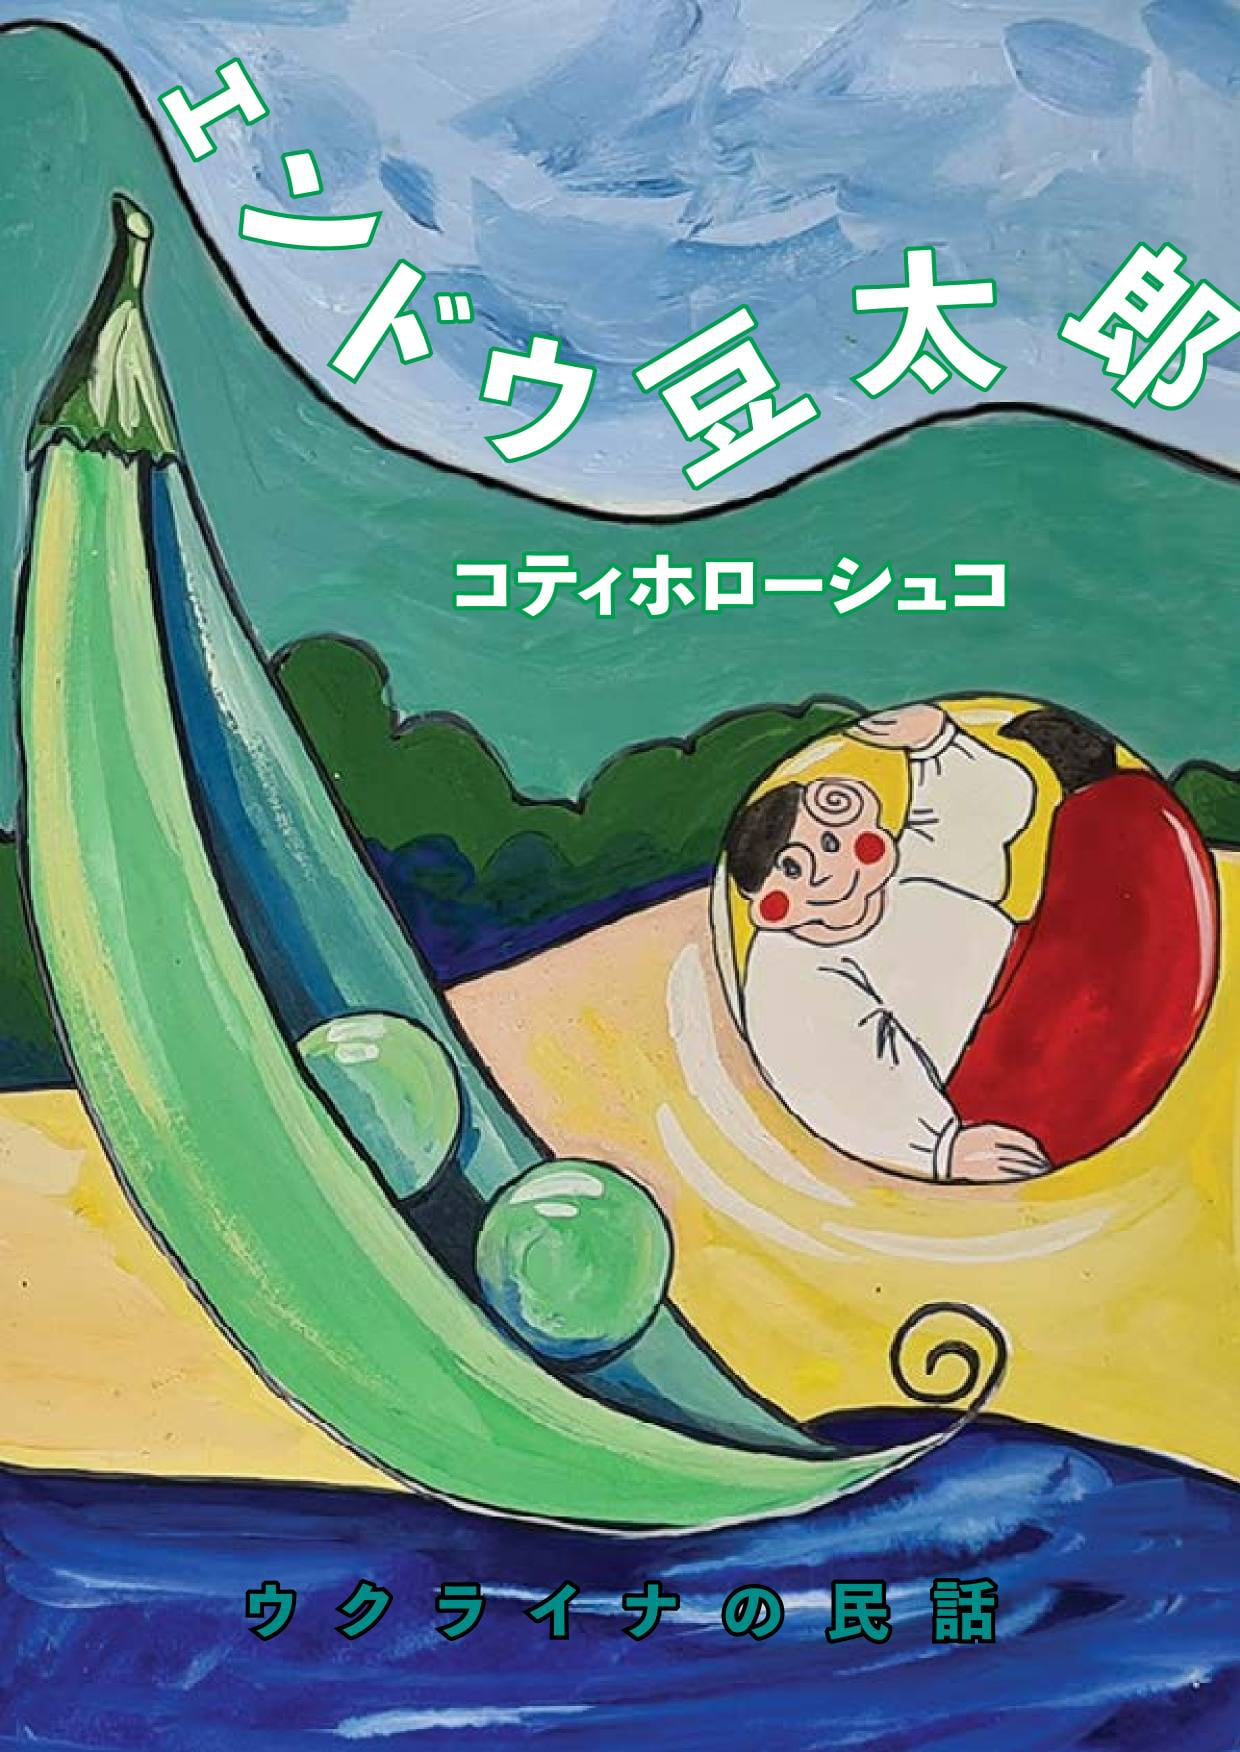 Українську казку «Котигорошко» переклали японською і доповнили ілюстраціями (фото)